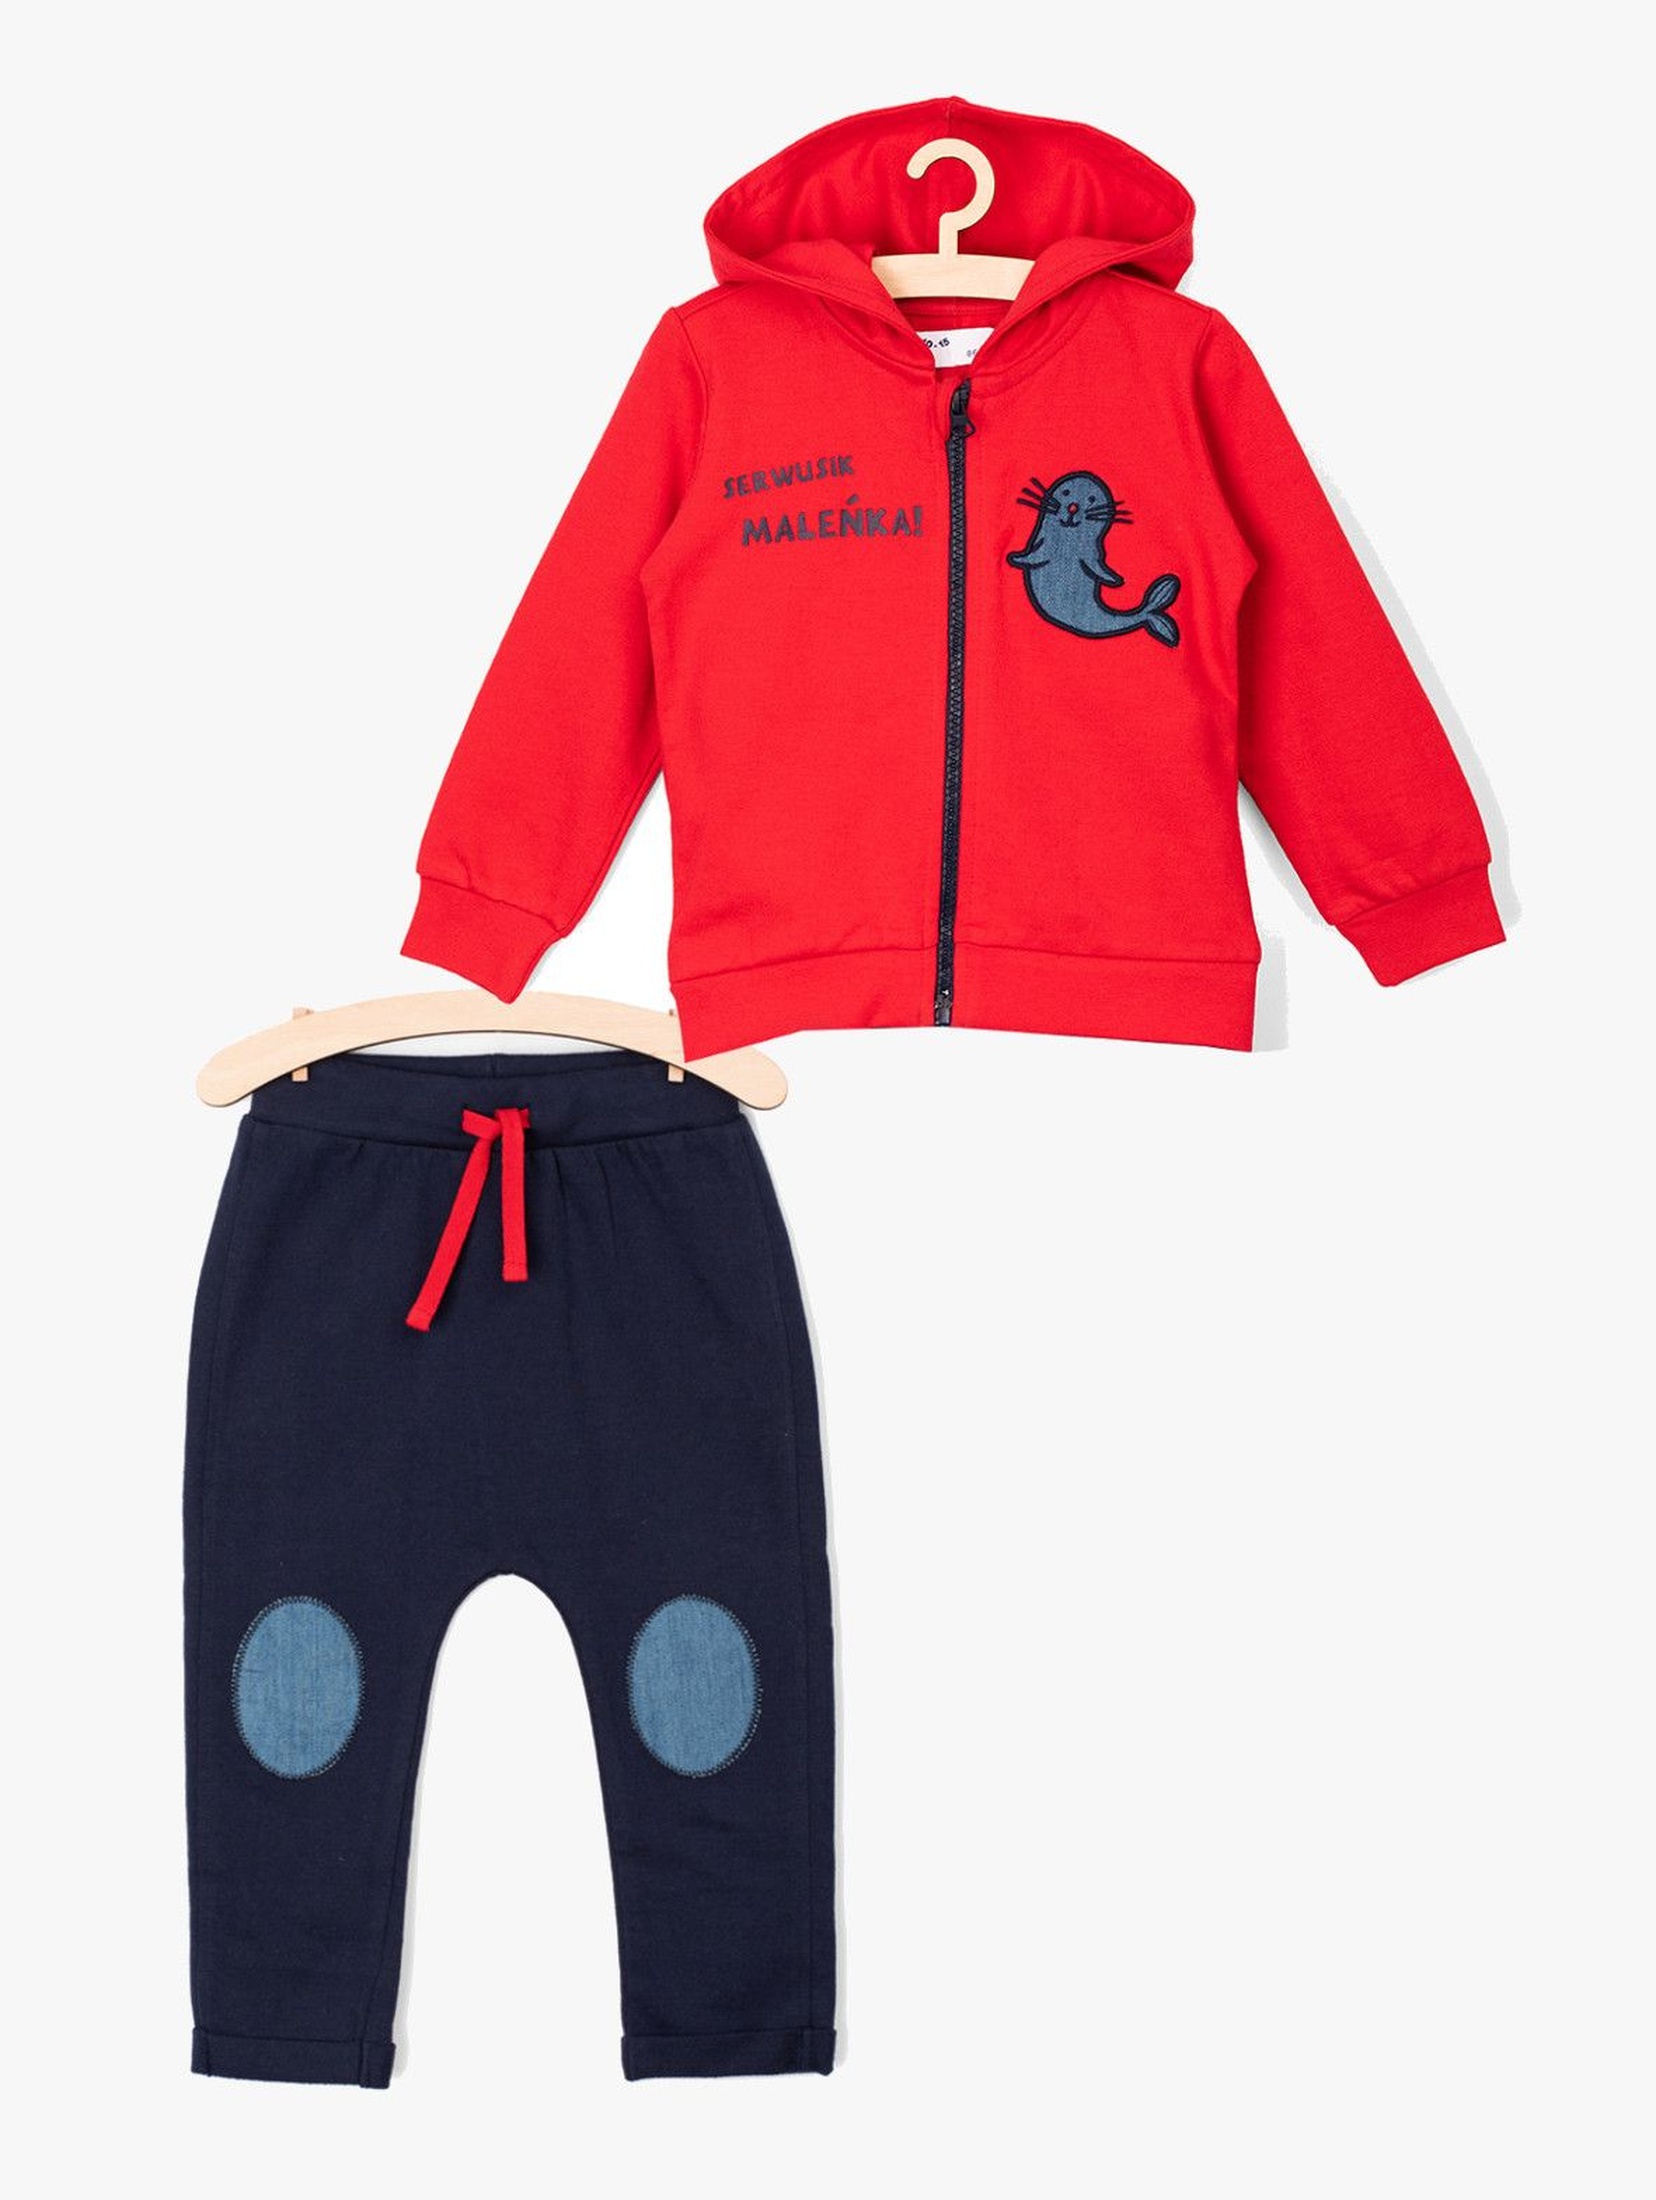 Komplet ubrań dla niemowlaka czerwona bluza i spodnie dresowe